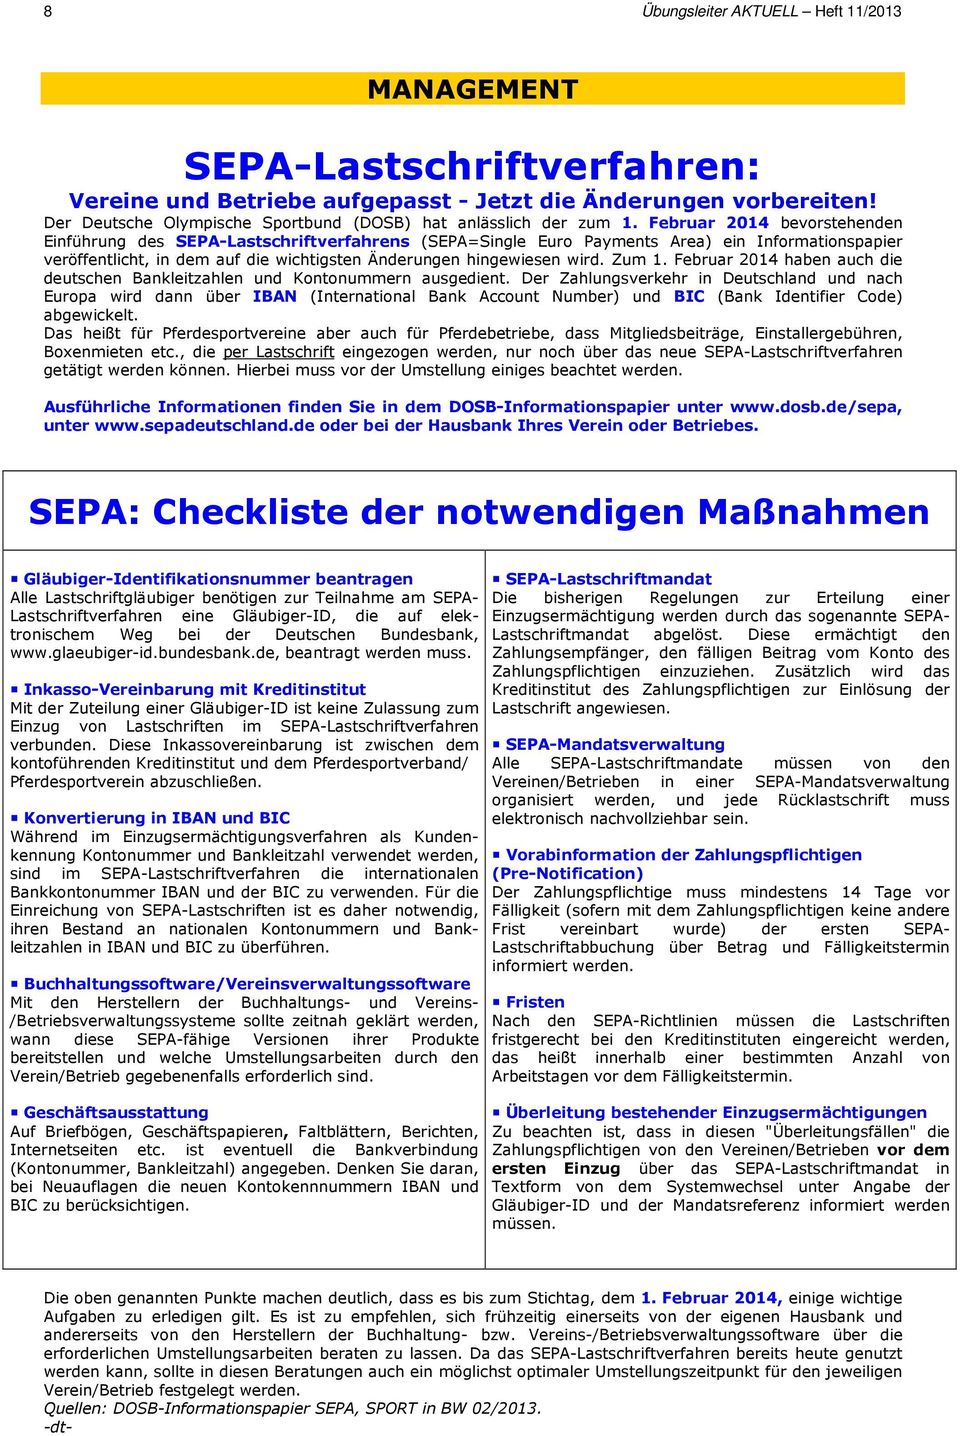 Februar 2014 bevorstehenden Einführung des SEPA-Lastschriftverfahrens (SEPA=Single Euro Payments Area) ein Informationspapier veröffentlicht, in dem auf die wichtigsten Änderungen hingewiesen wird.